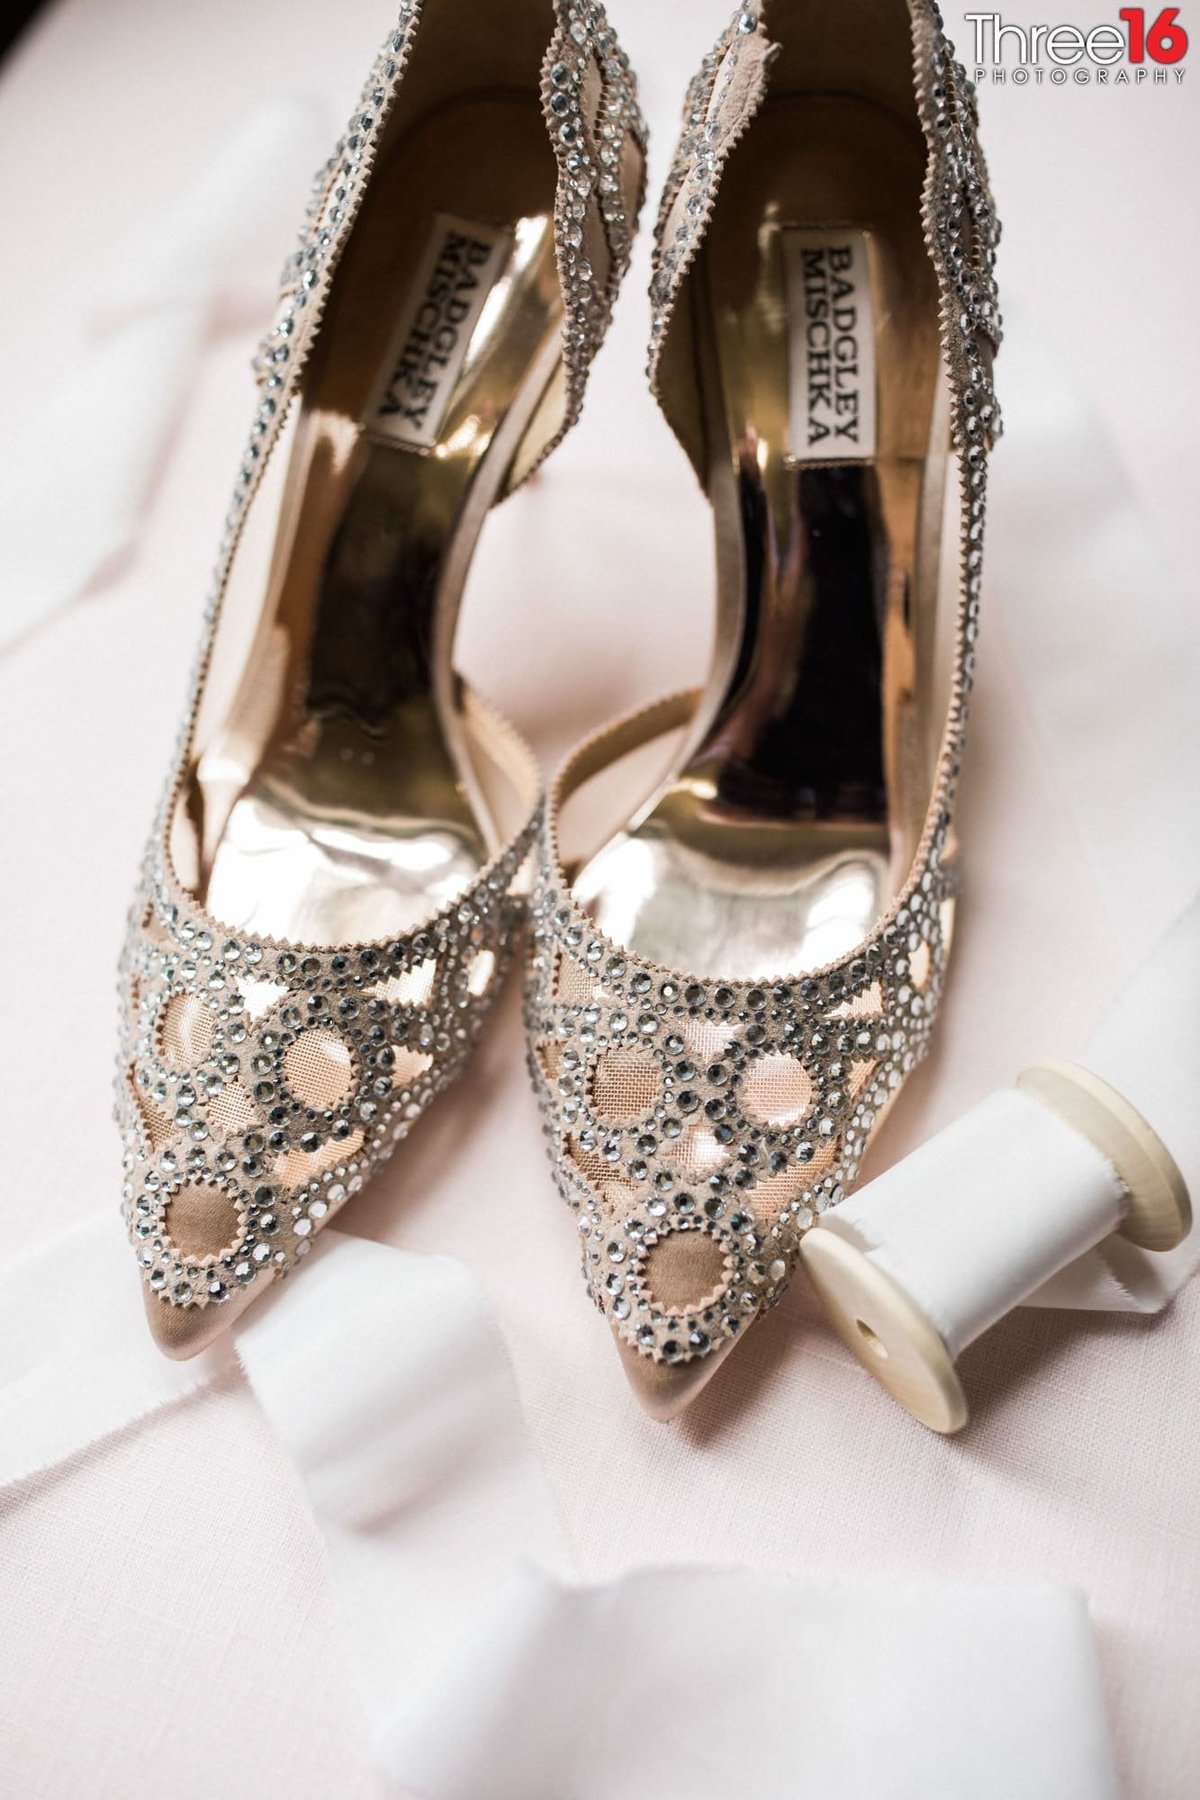 Bride's glitzy wedding shoes